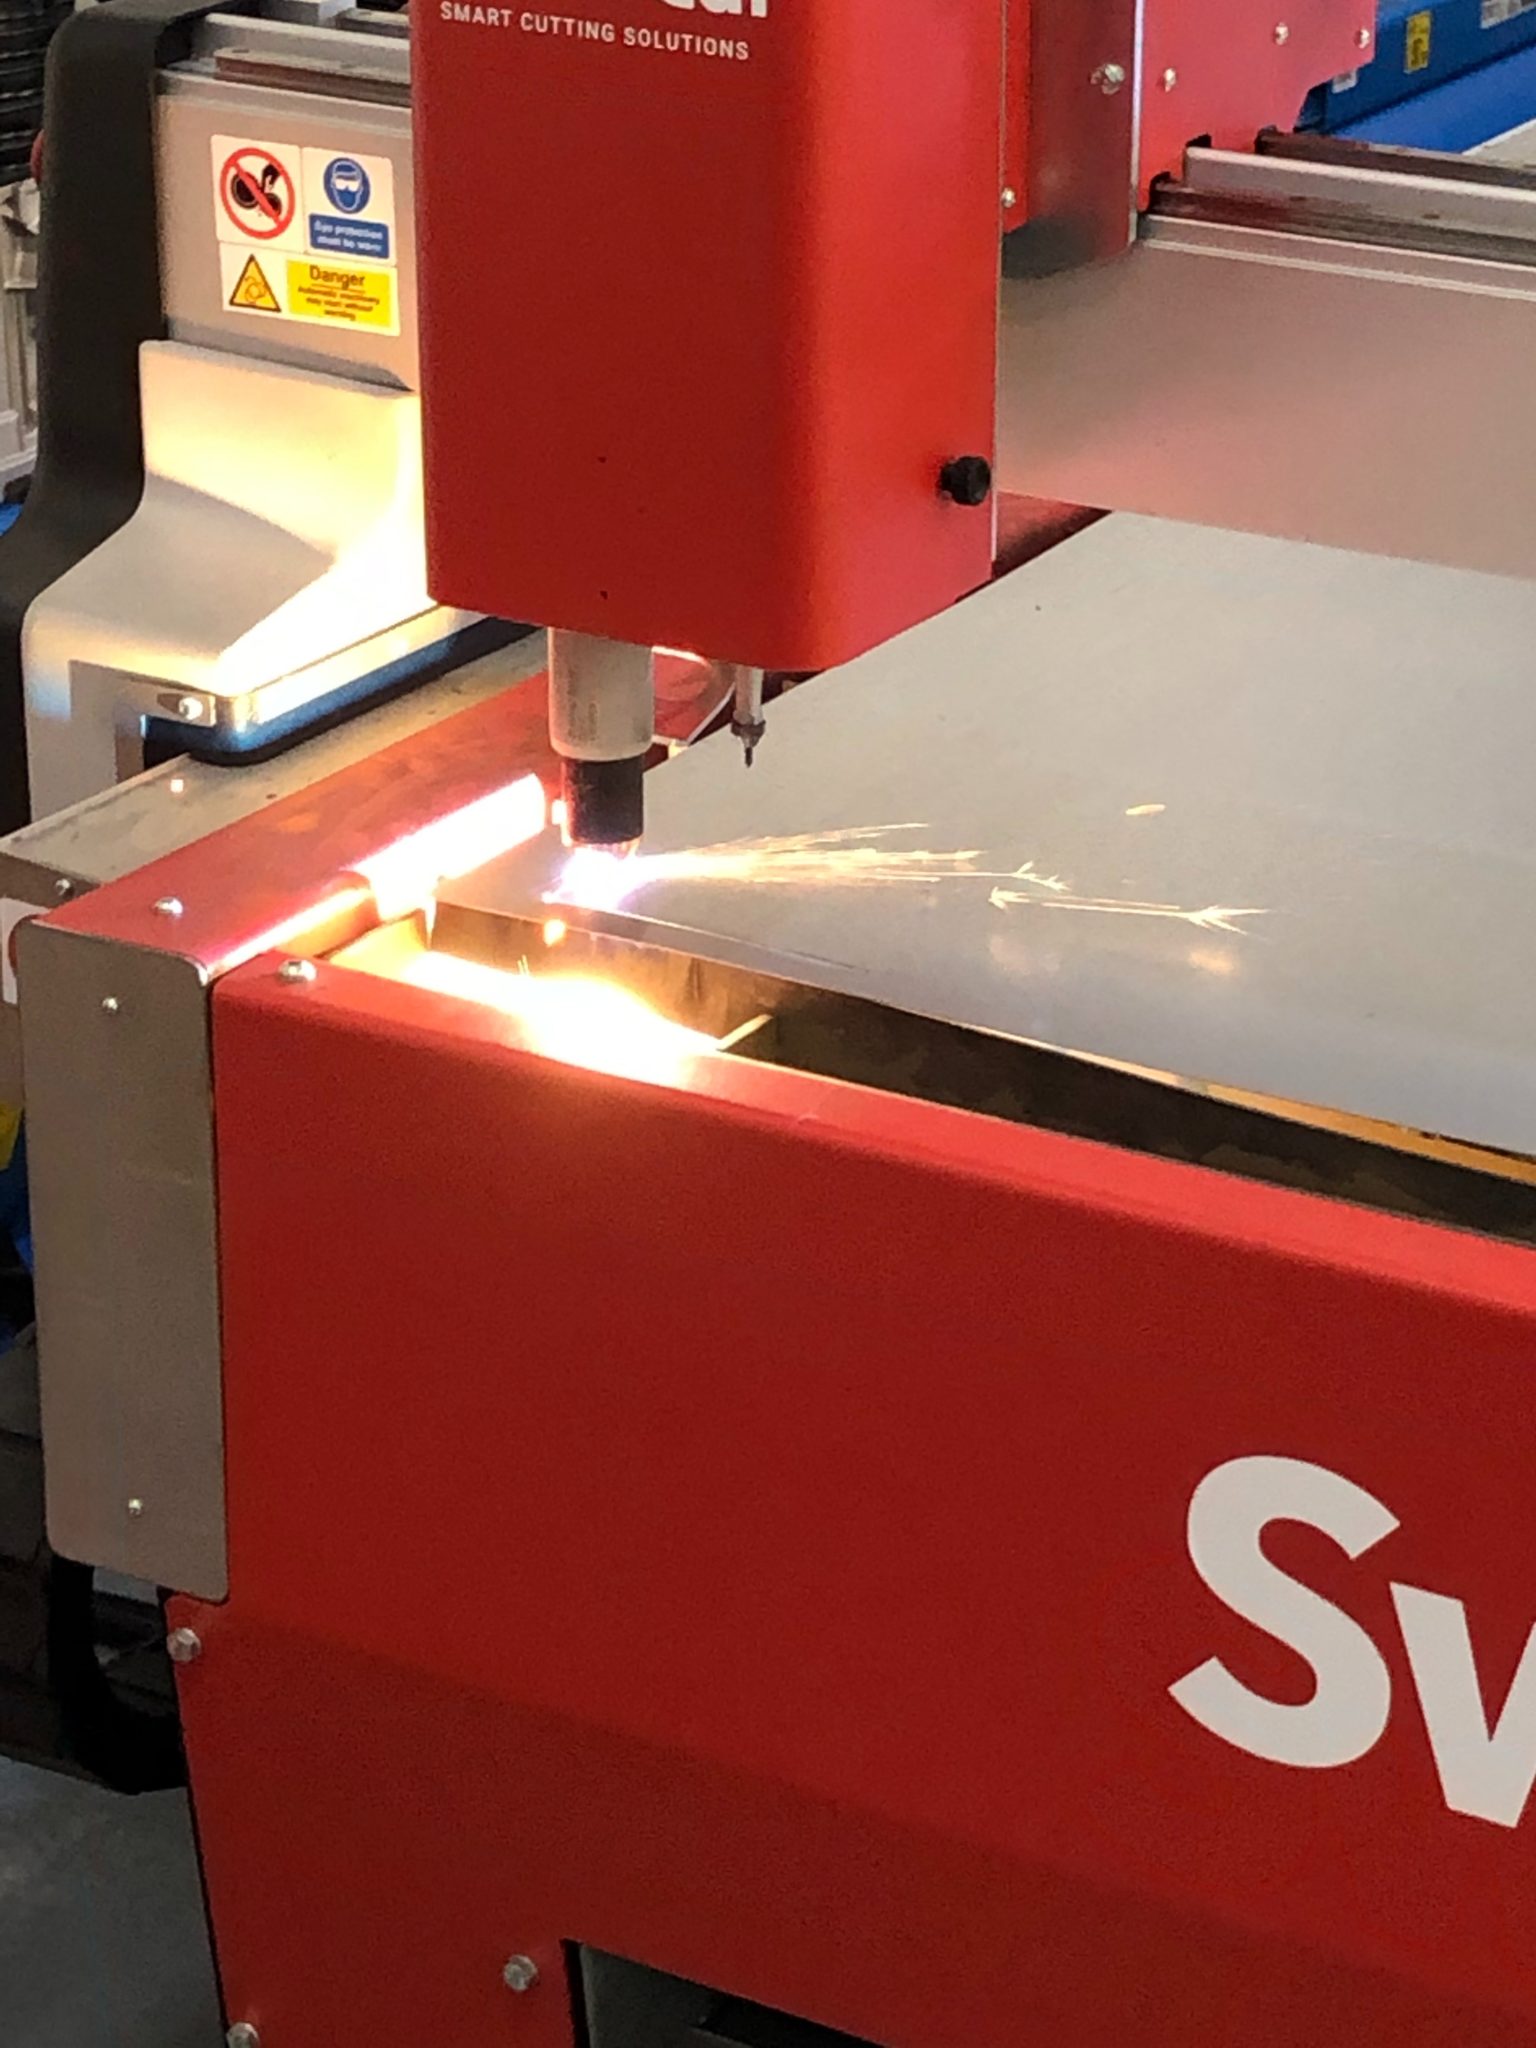 Eagle Fabrications Swift Cutter Swift-Cut Pro Table cortando la hoja de metal